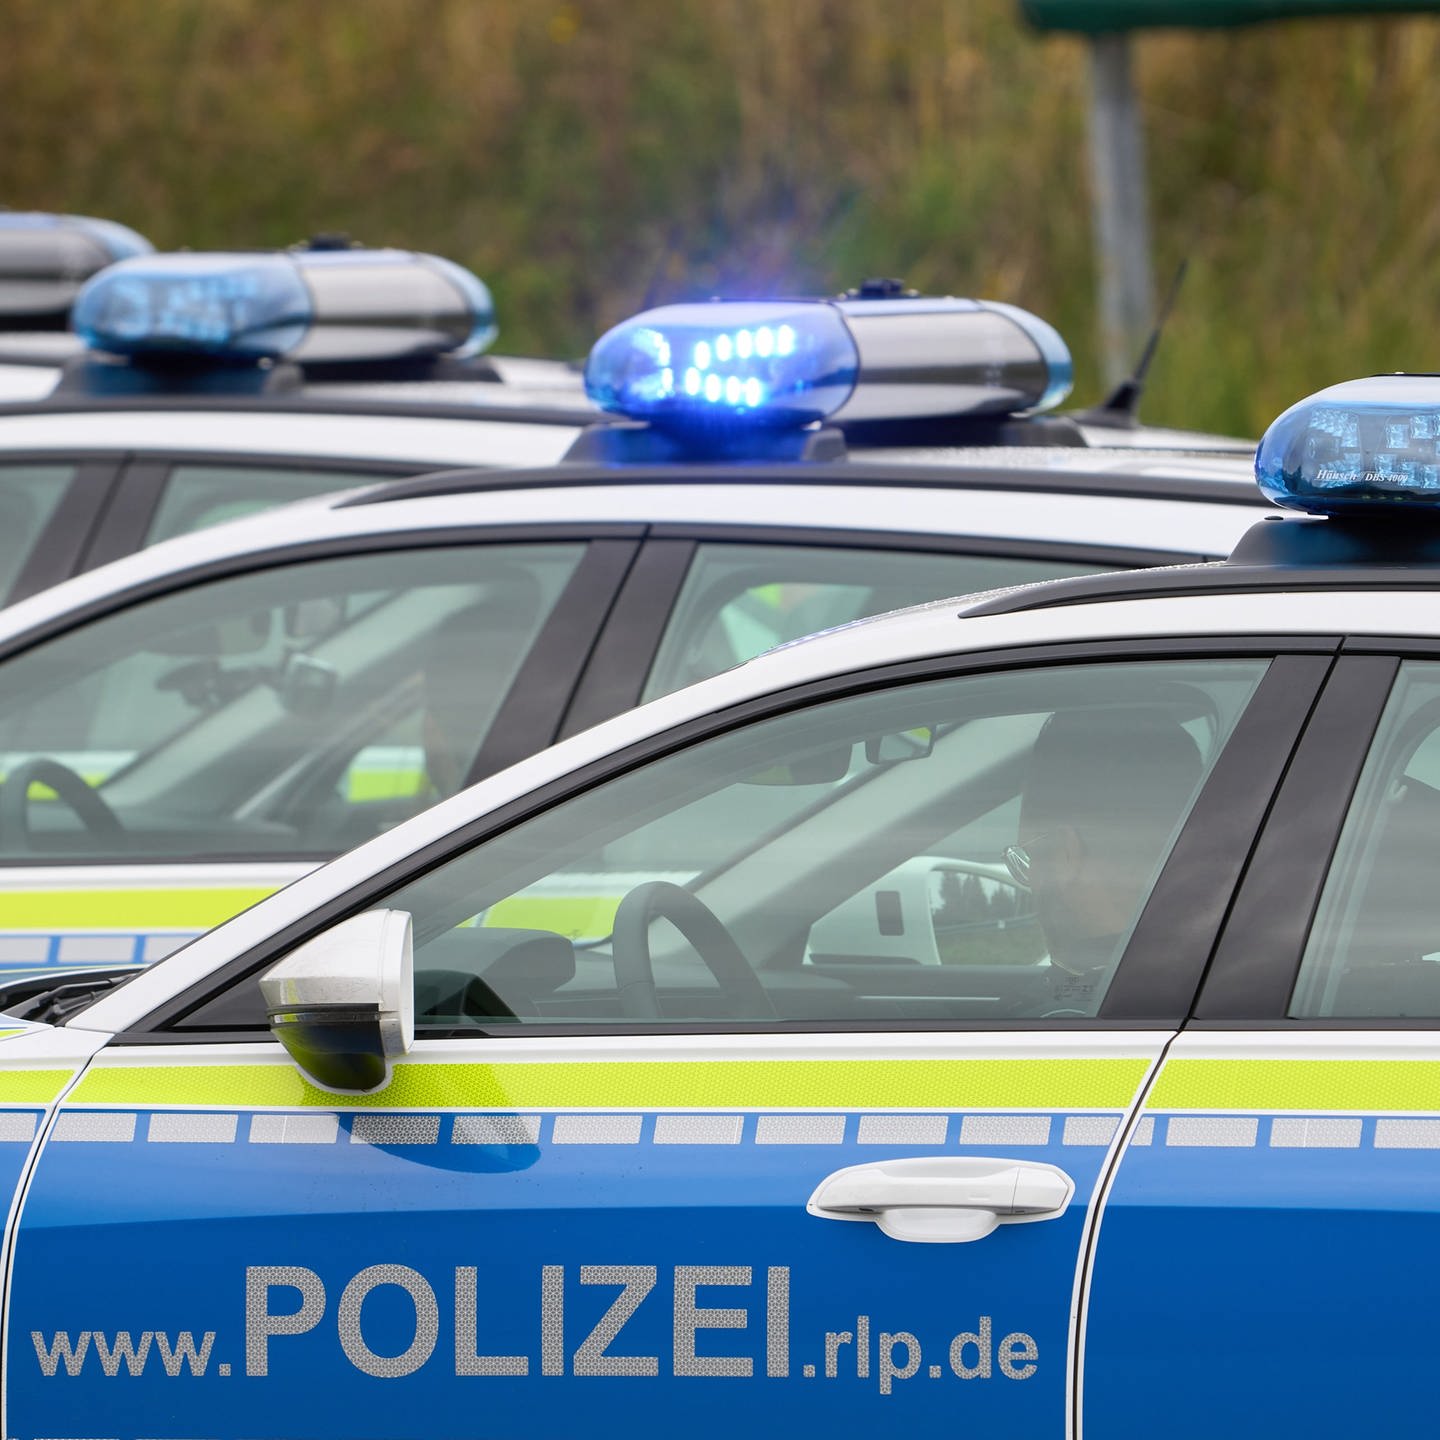 Rechtsextreme Vorfälle bei Polizei in Rheinland-Pfalz? - SWR Aktuell